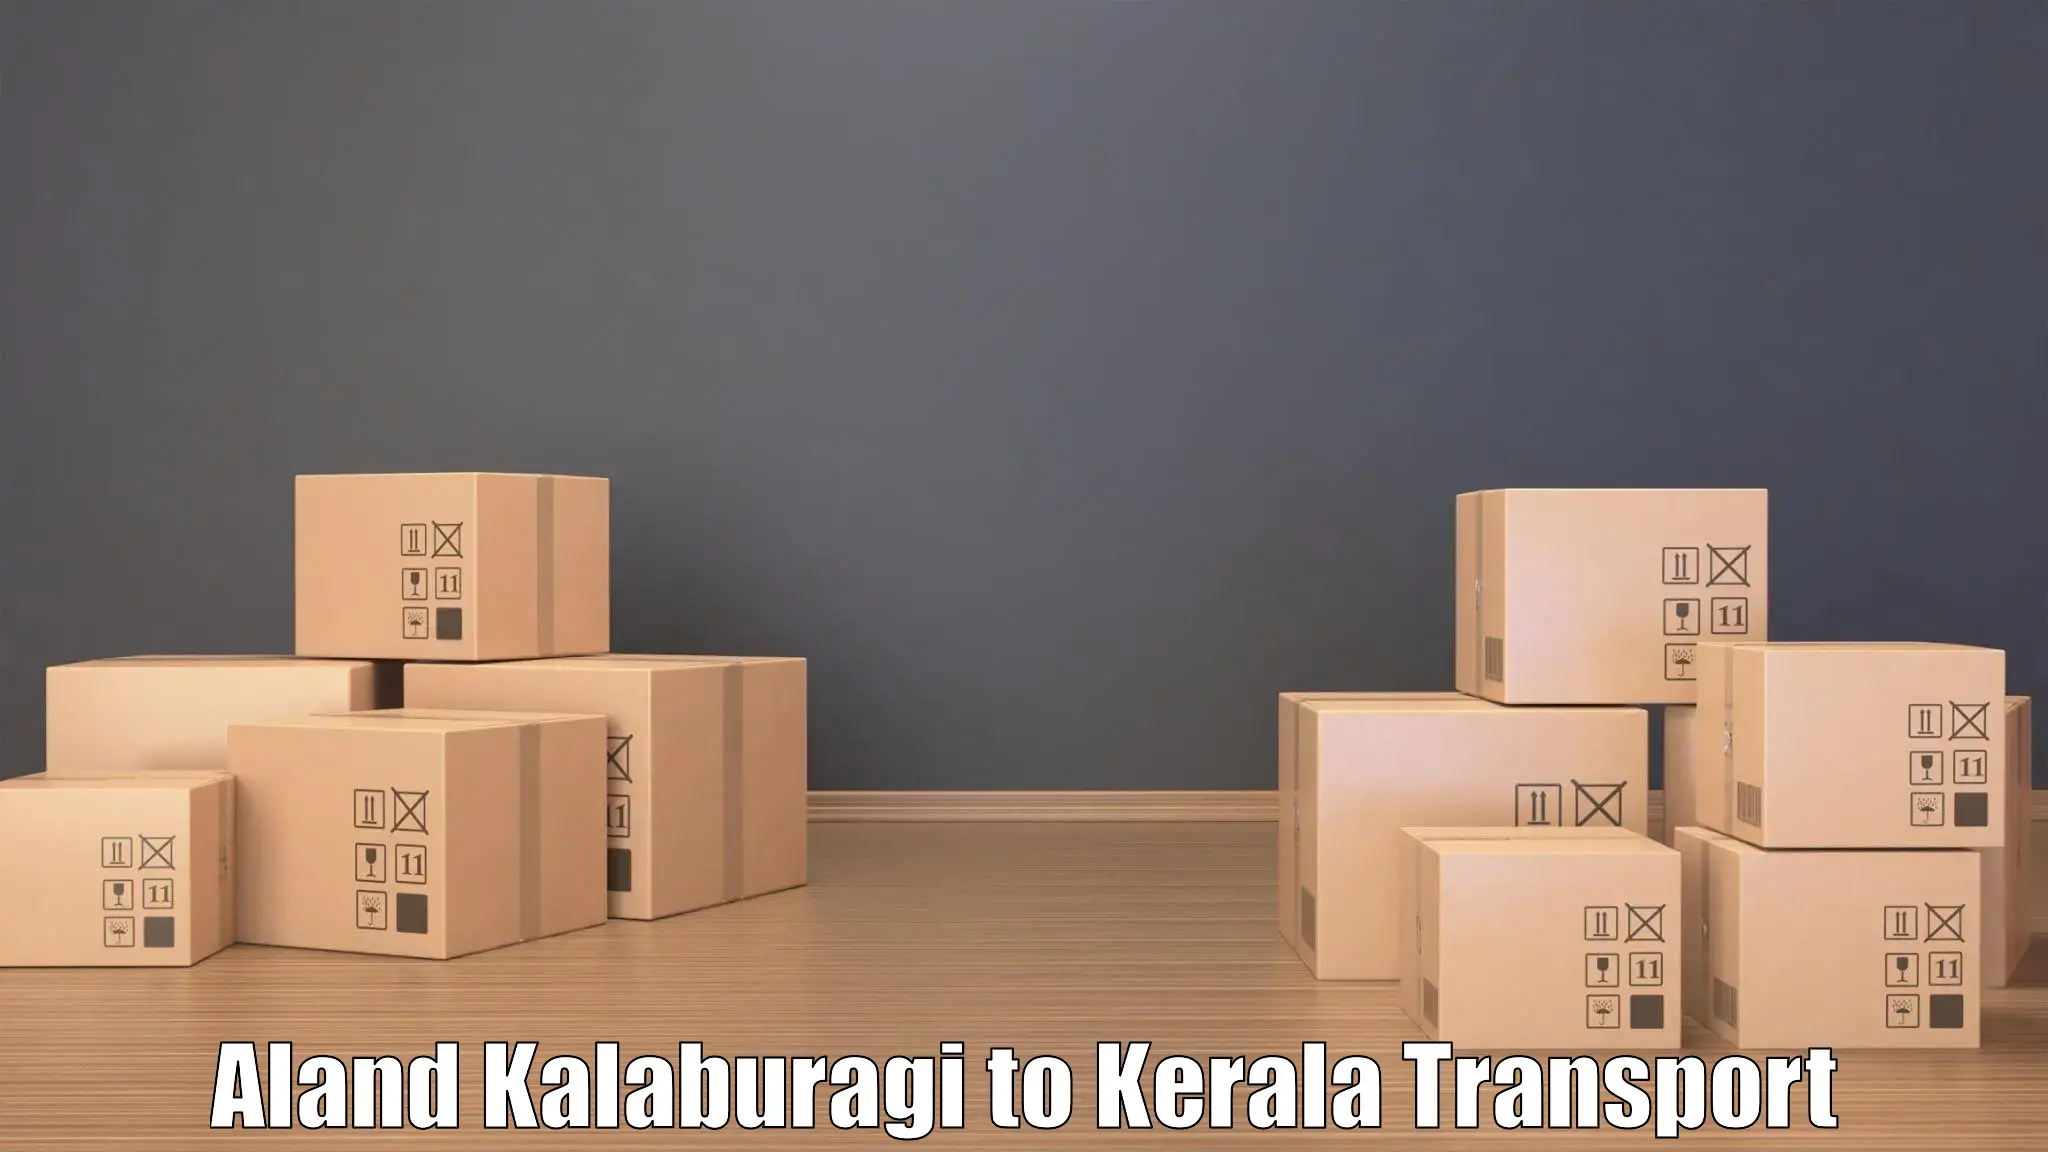 Online transport booking Aland Kalaburagi to Calicut